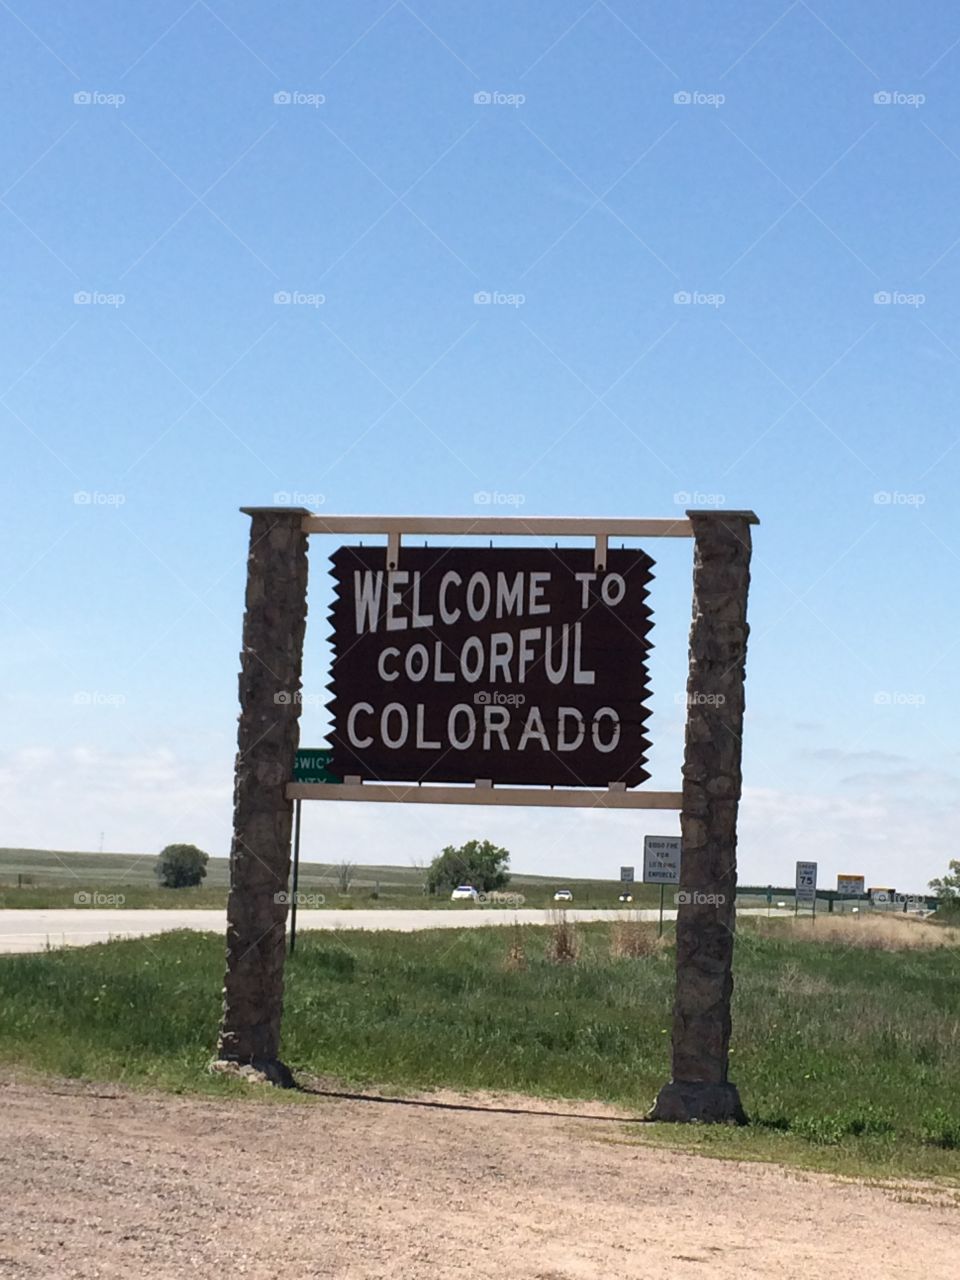 Nebraska-Colorado state line